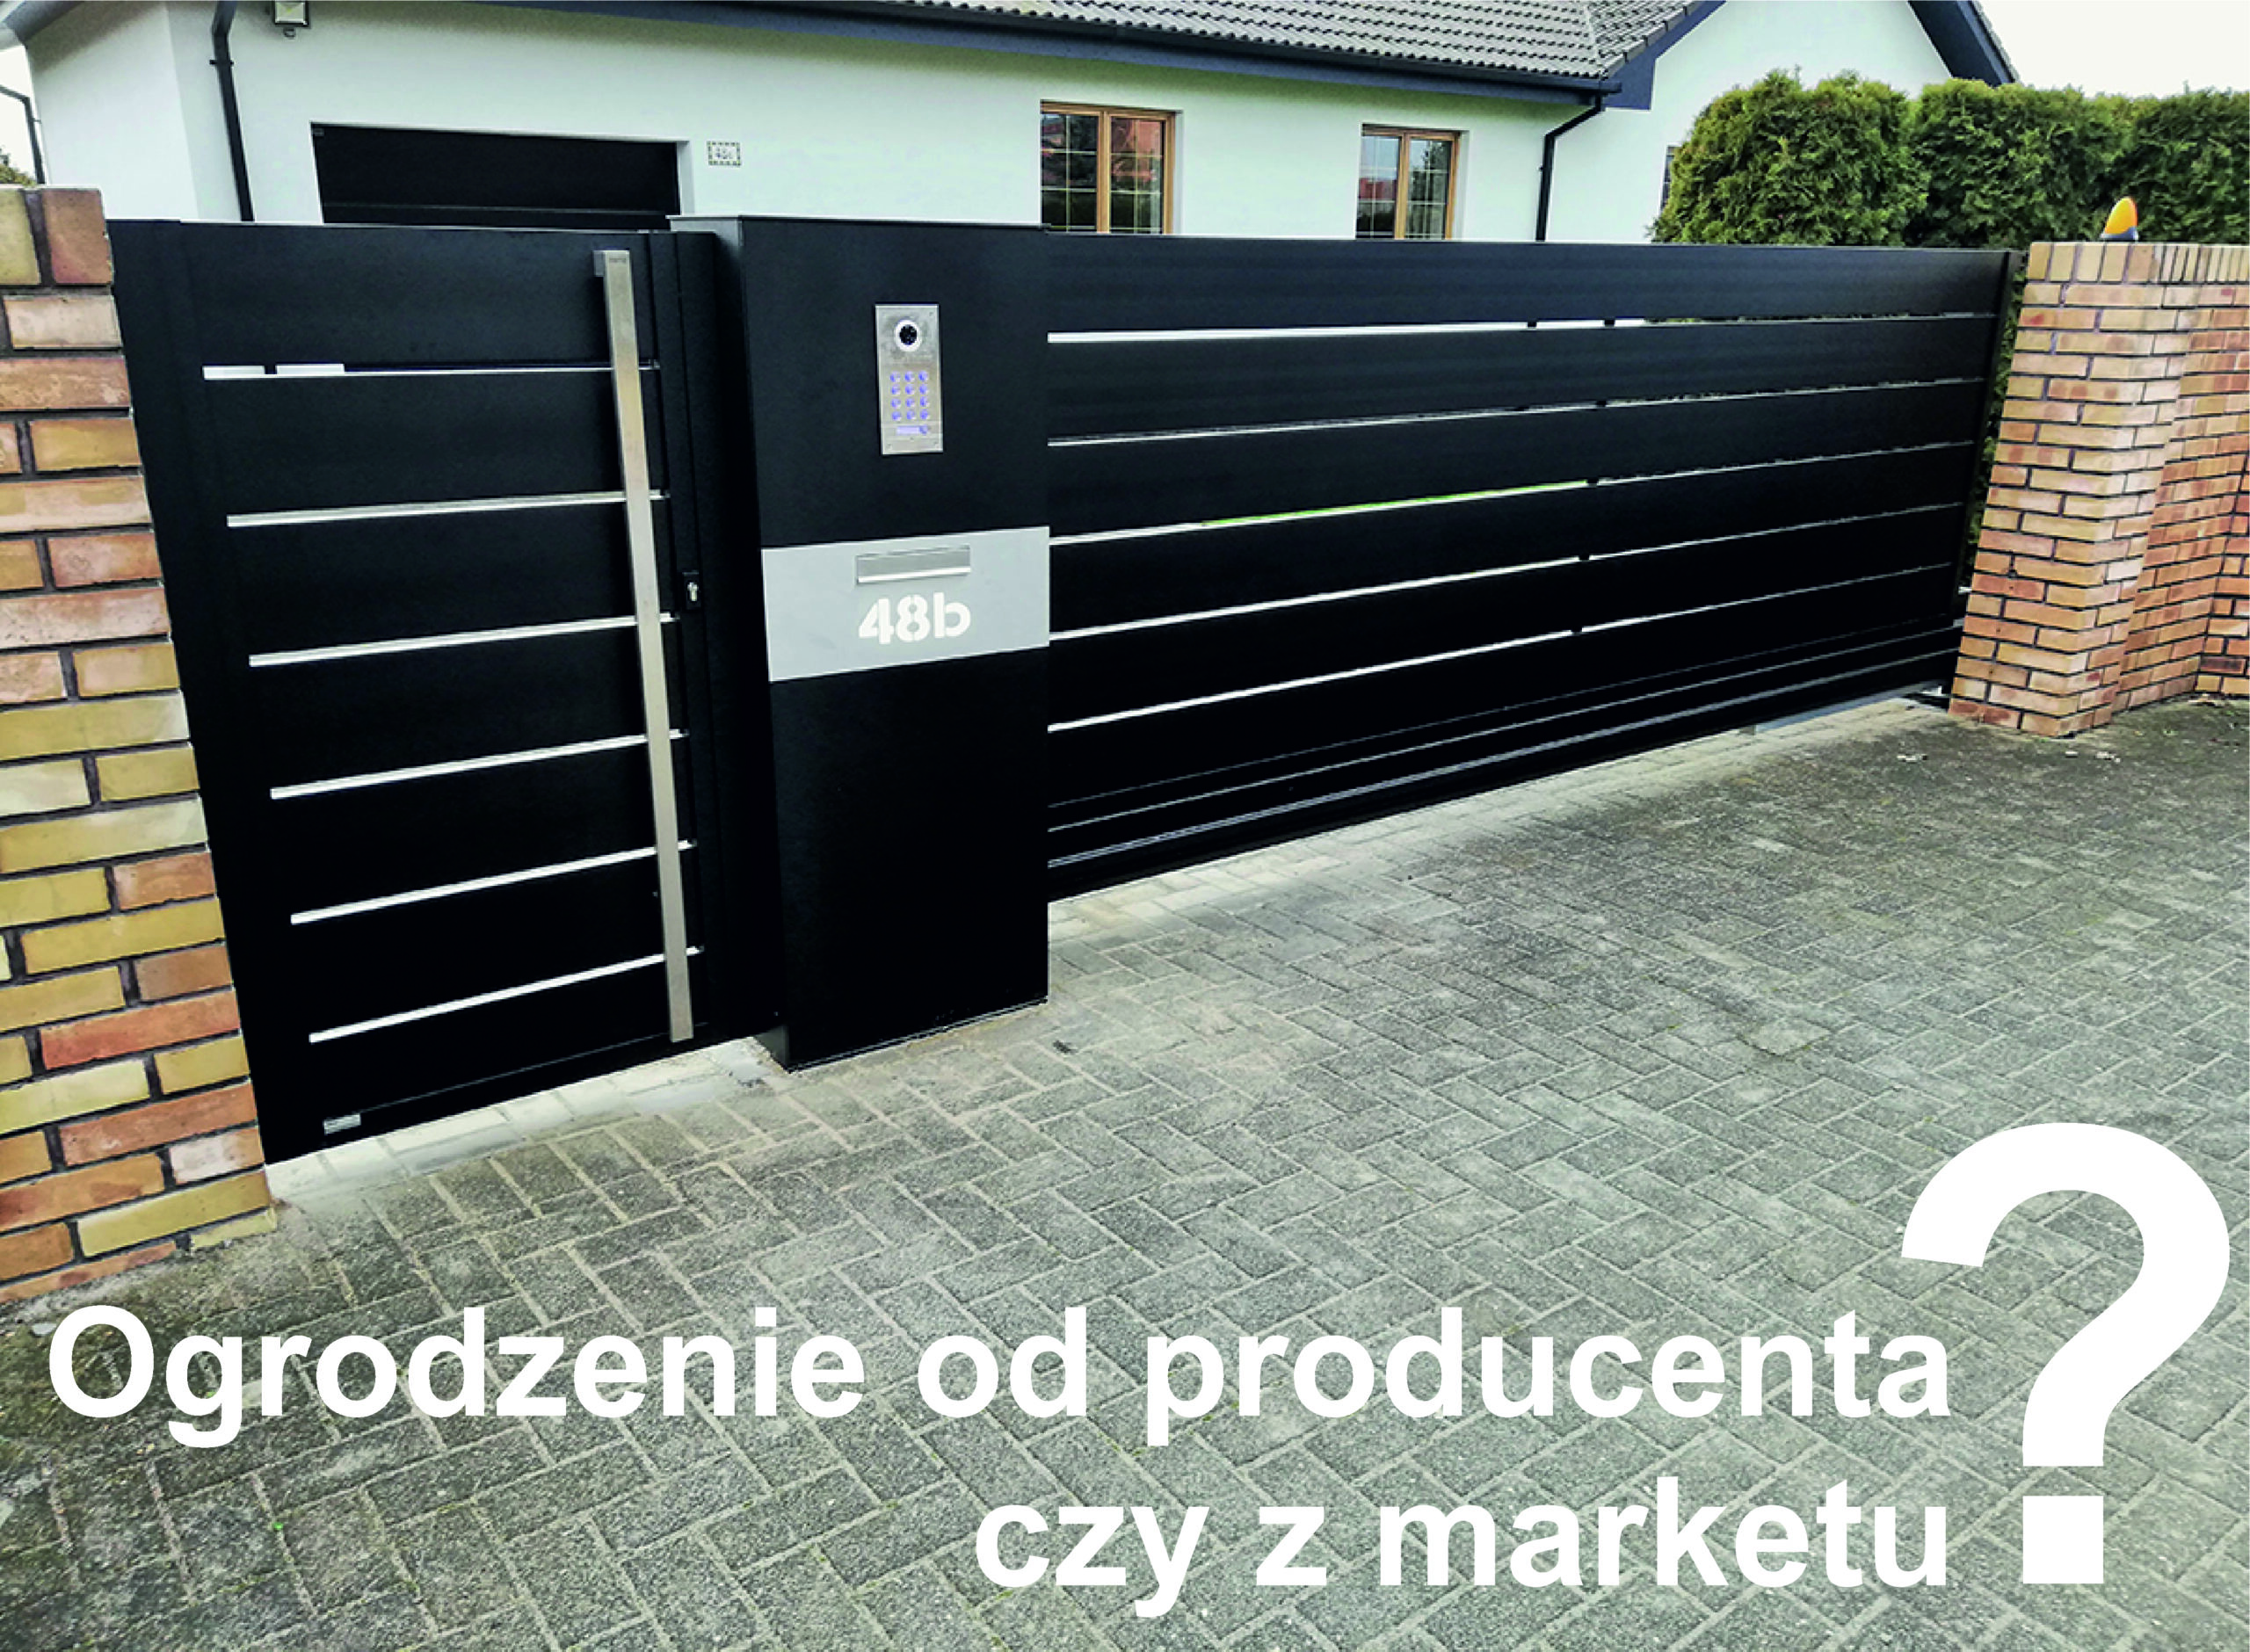 Read more about the article Ogrodzenie od producenta czy z marketu ?